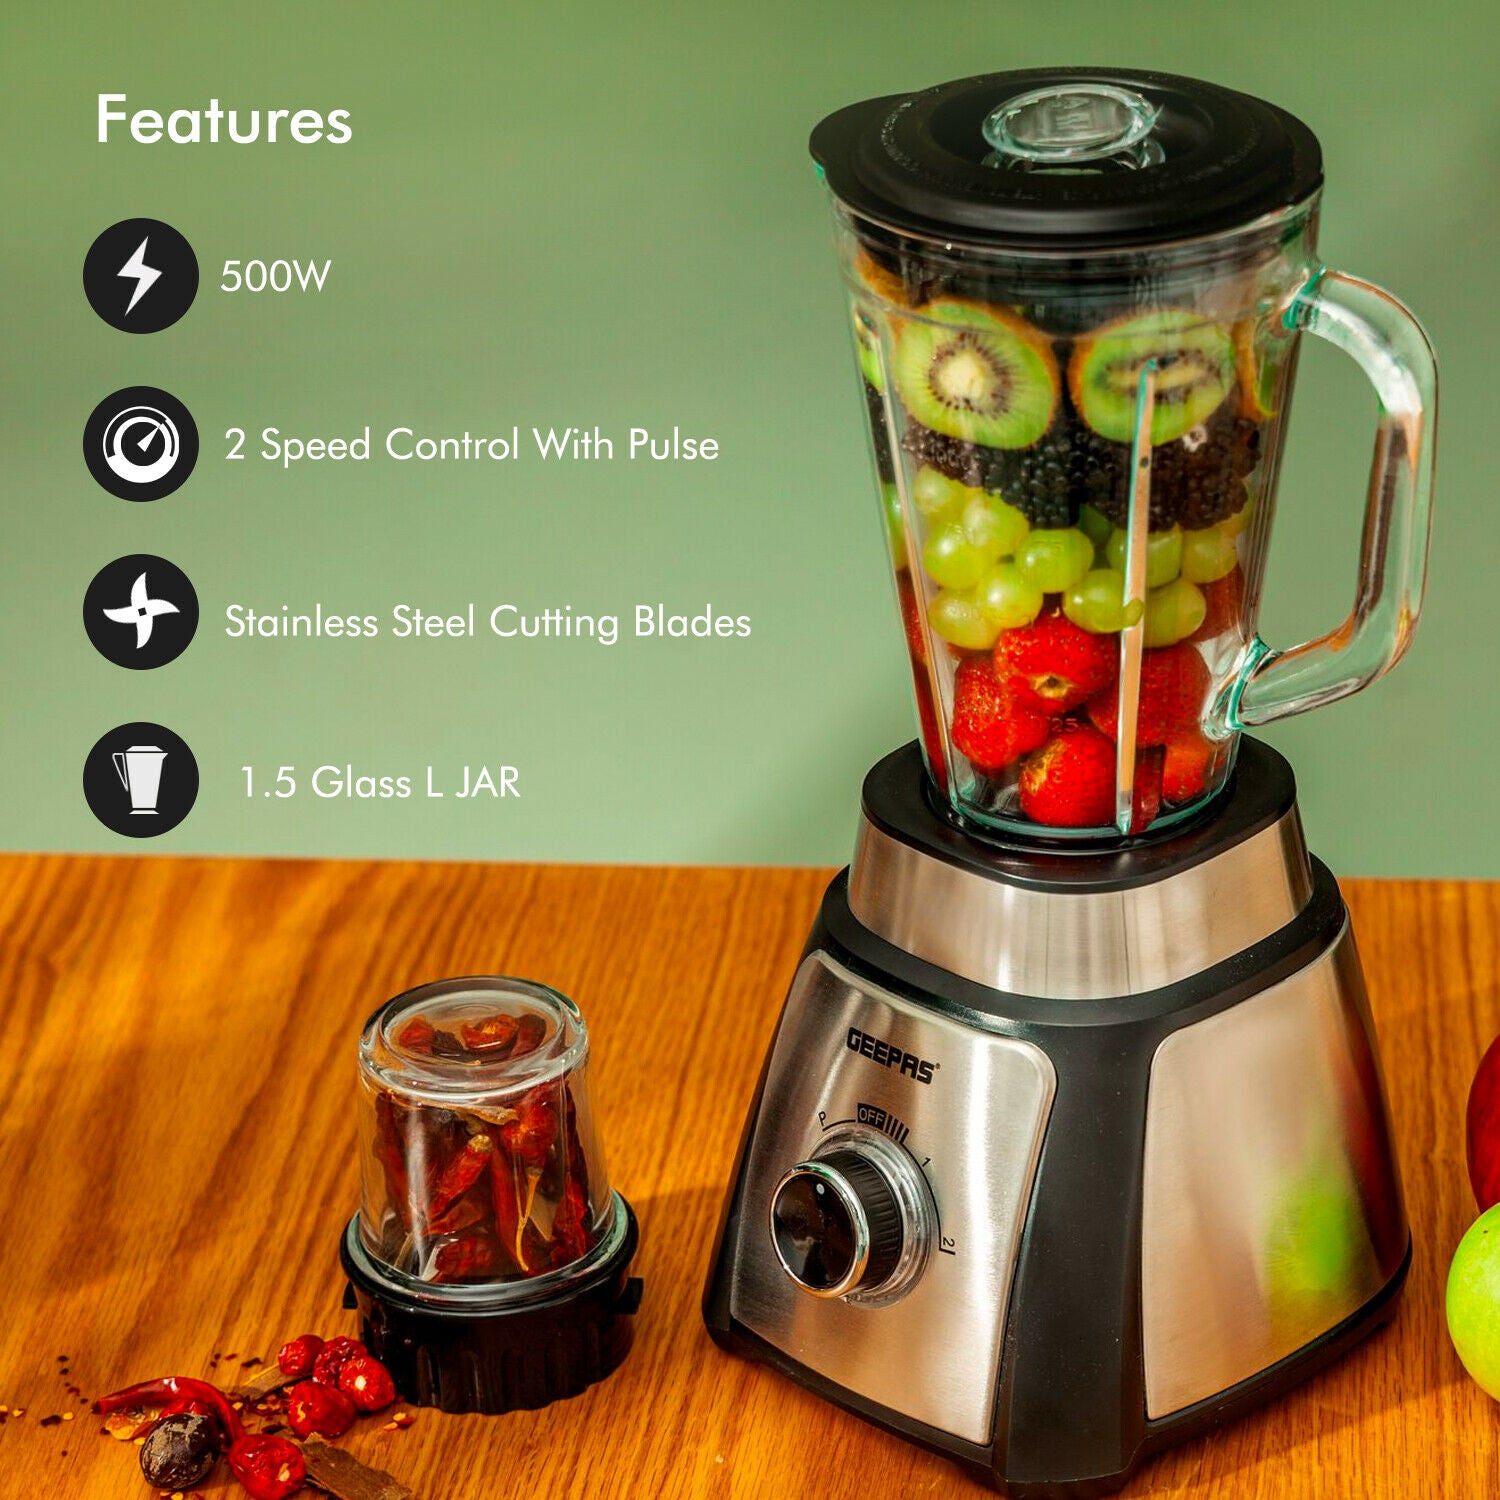 Geepas 500W Glass Food Jug Blender 1.5 L Black | Kitchen Appliances | Halabh.com